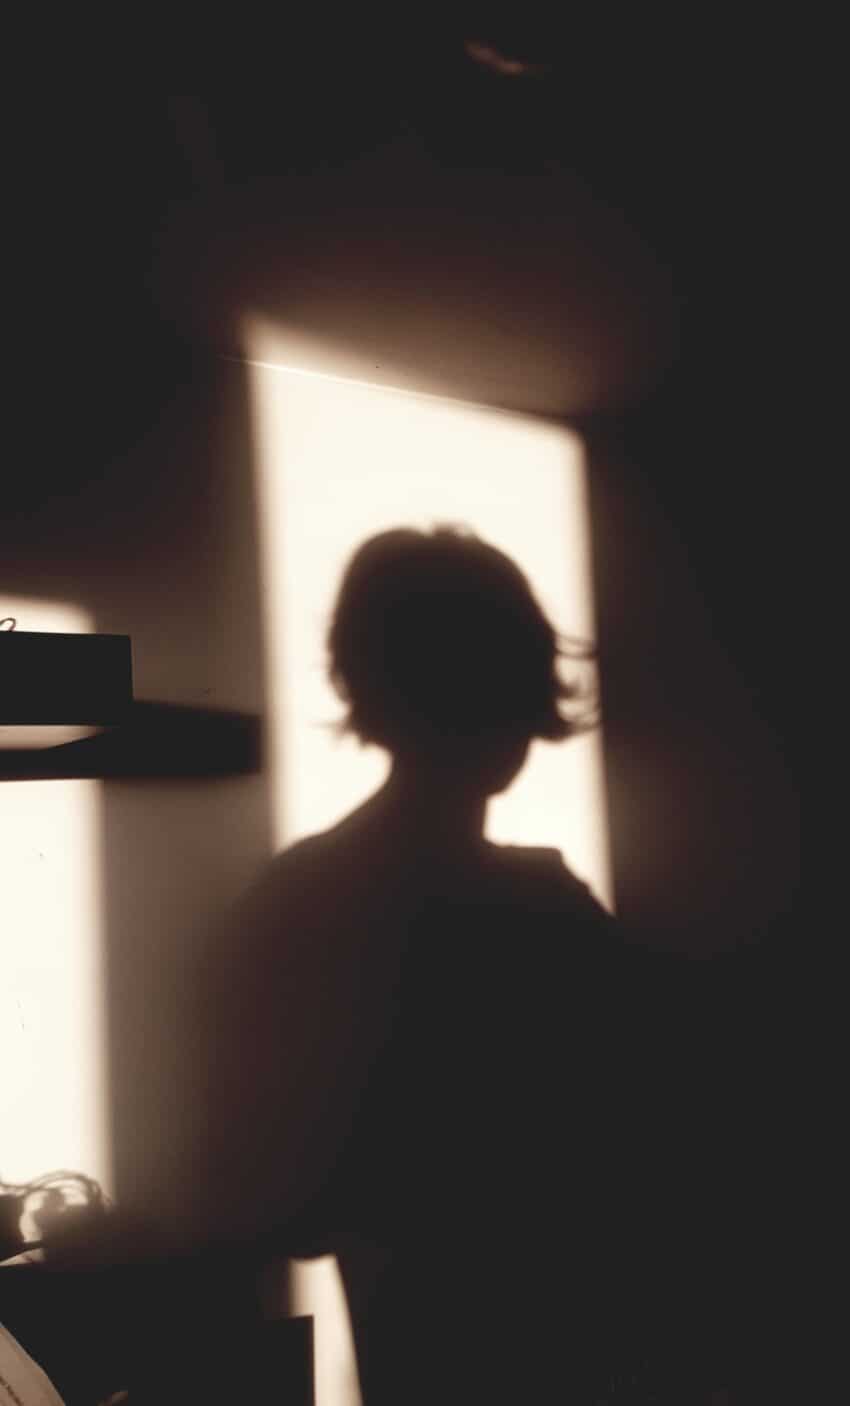 zdjęcie do tekstu czapeczka i tożsamość, pokazuje tylko mój cień, zarys na ścianie, czarny w zestawieniu z jasnym słońcem